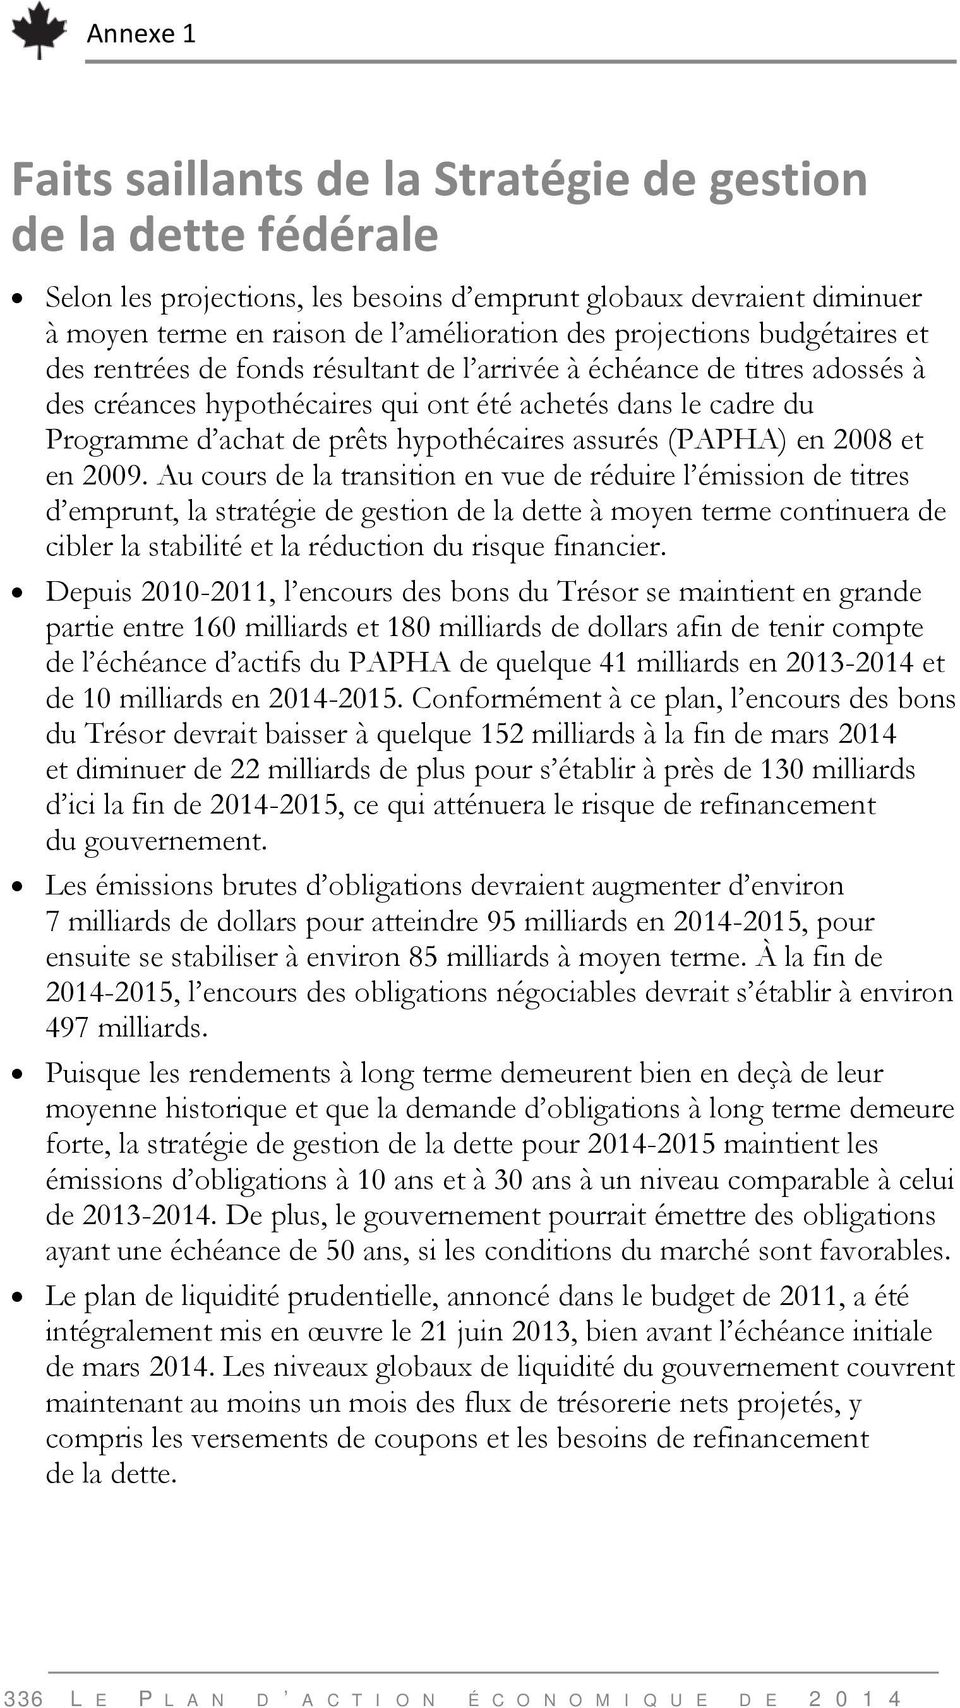 hypothécaires assurés (PAPHA) en 2008 et en 2009.